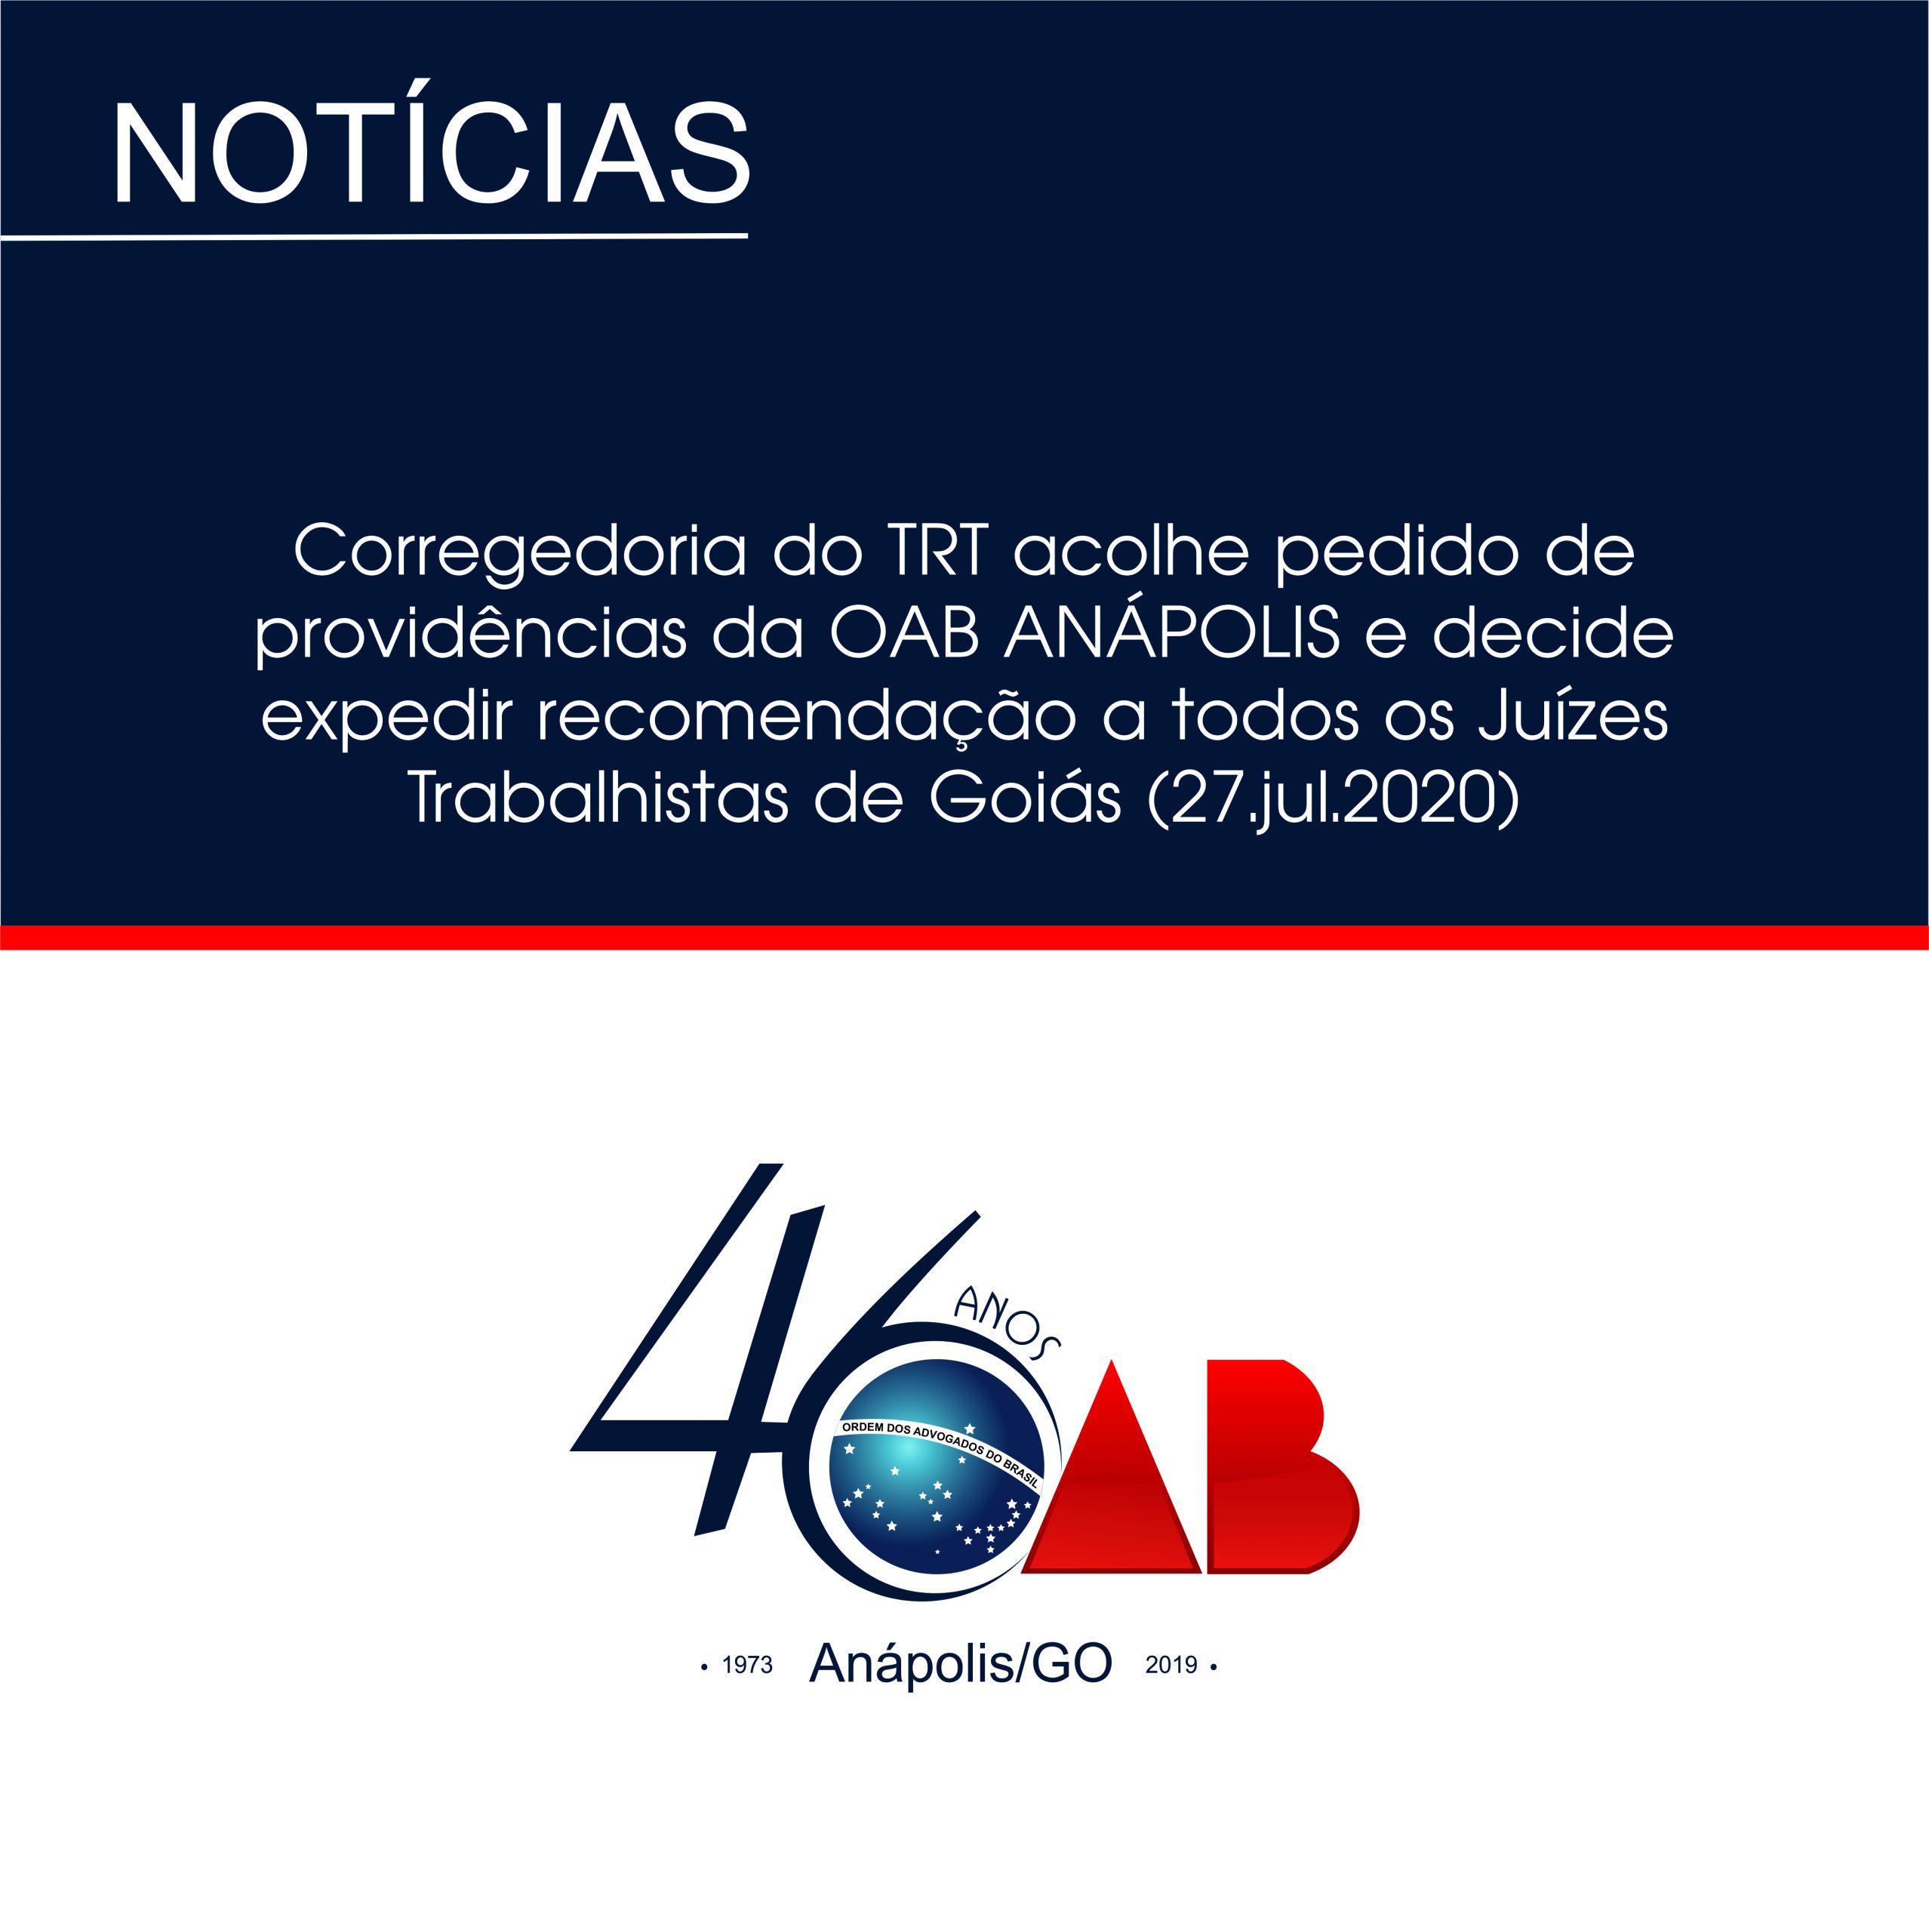 Corregedoria do TRT acolhe pedido de providências da OAB ANÁPOLIS e decide expedir recomendação a todos os Juízes Trabalhistas de Goiás (27.jul.2020)